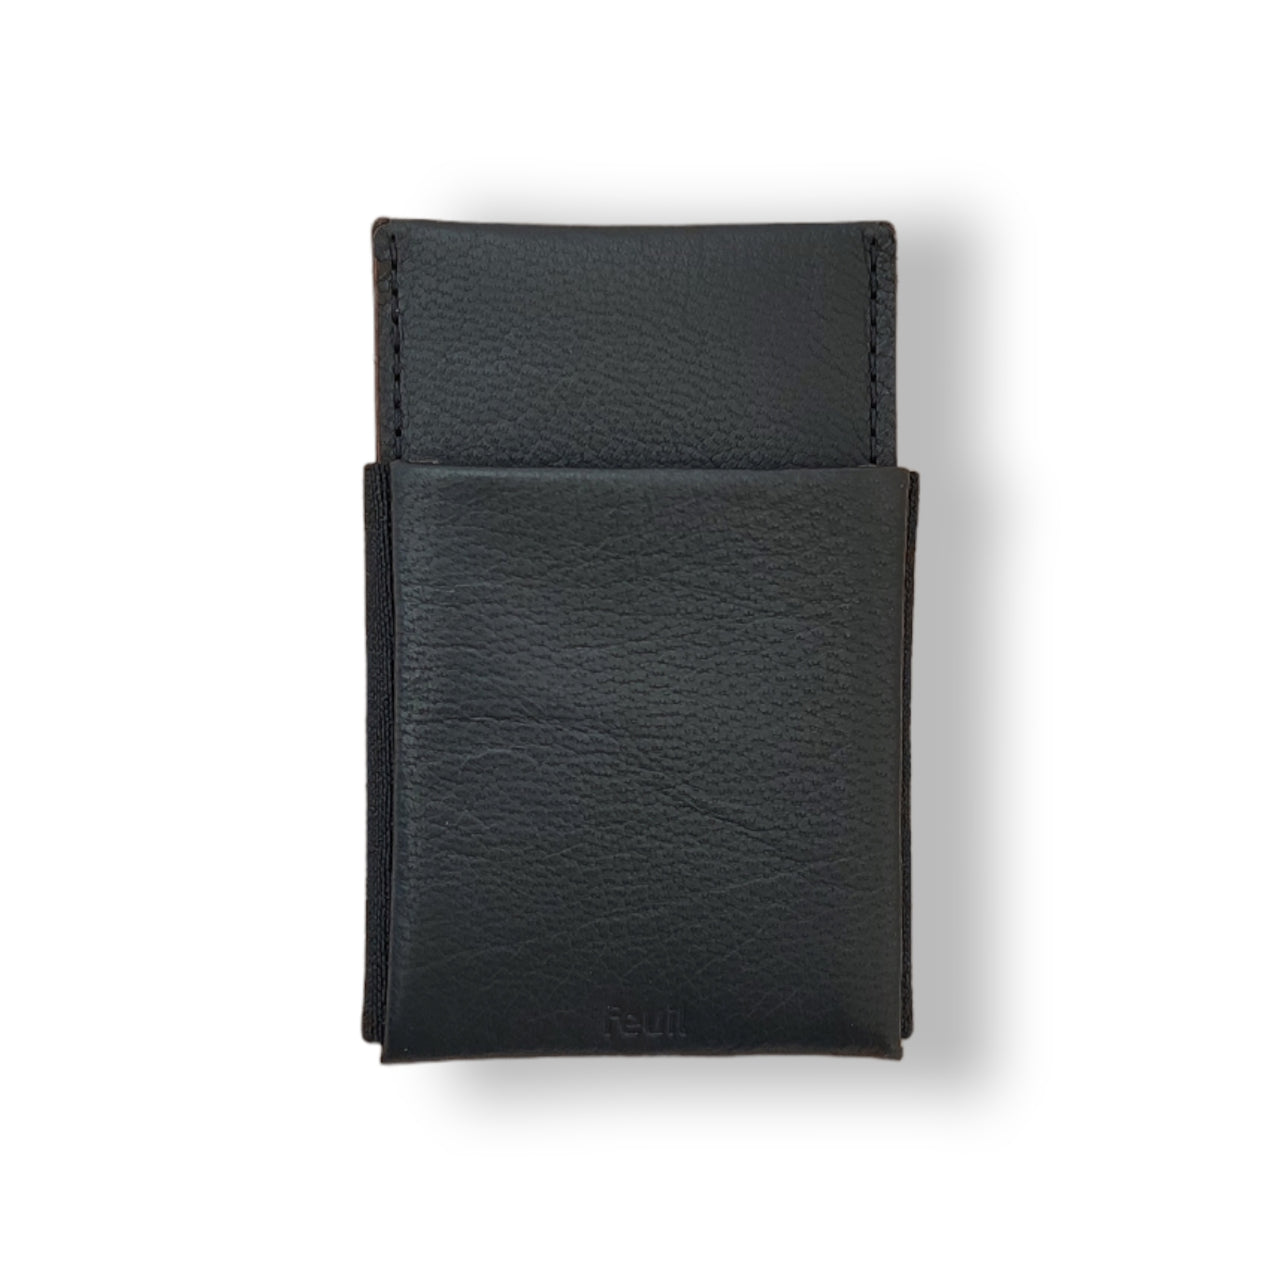 Wallet Portemonnaie Geldbörse mit RFID Schutz | Swiss Leder Farbe Schwarz | mit Münzfach und Geldscheine - feuil wallets | accessories